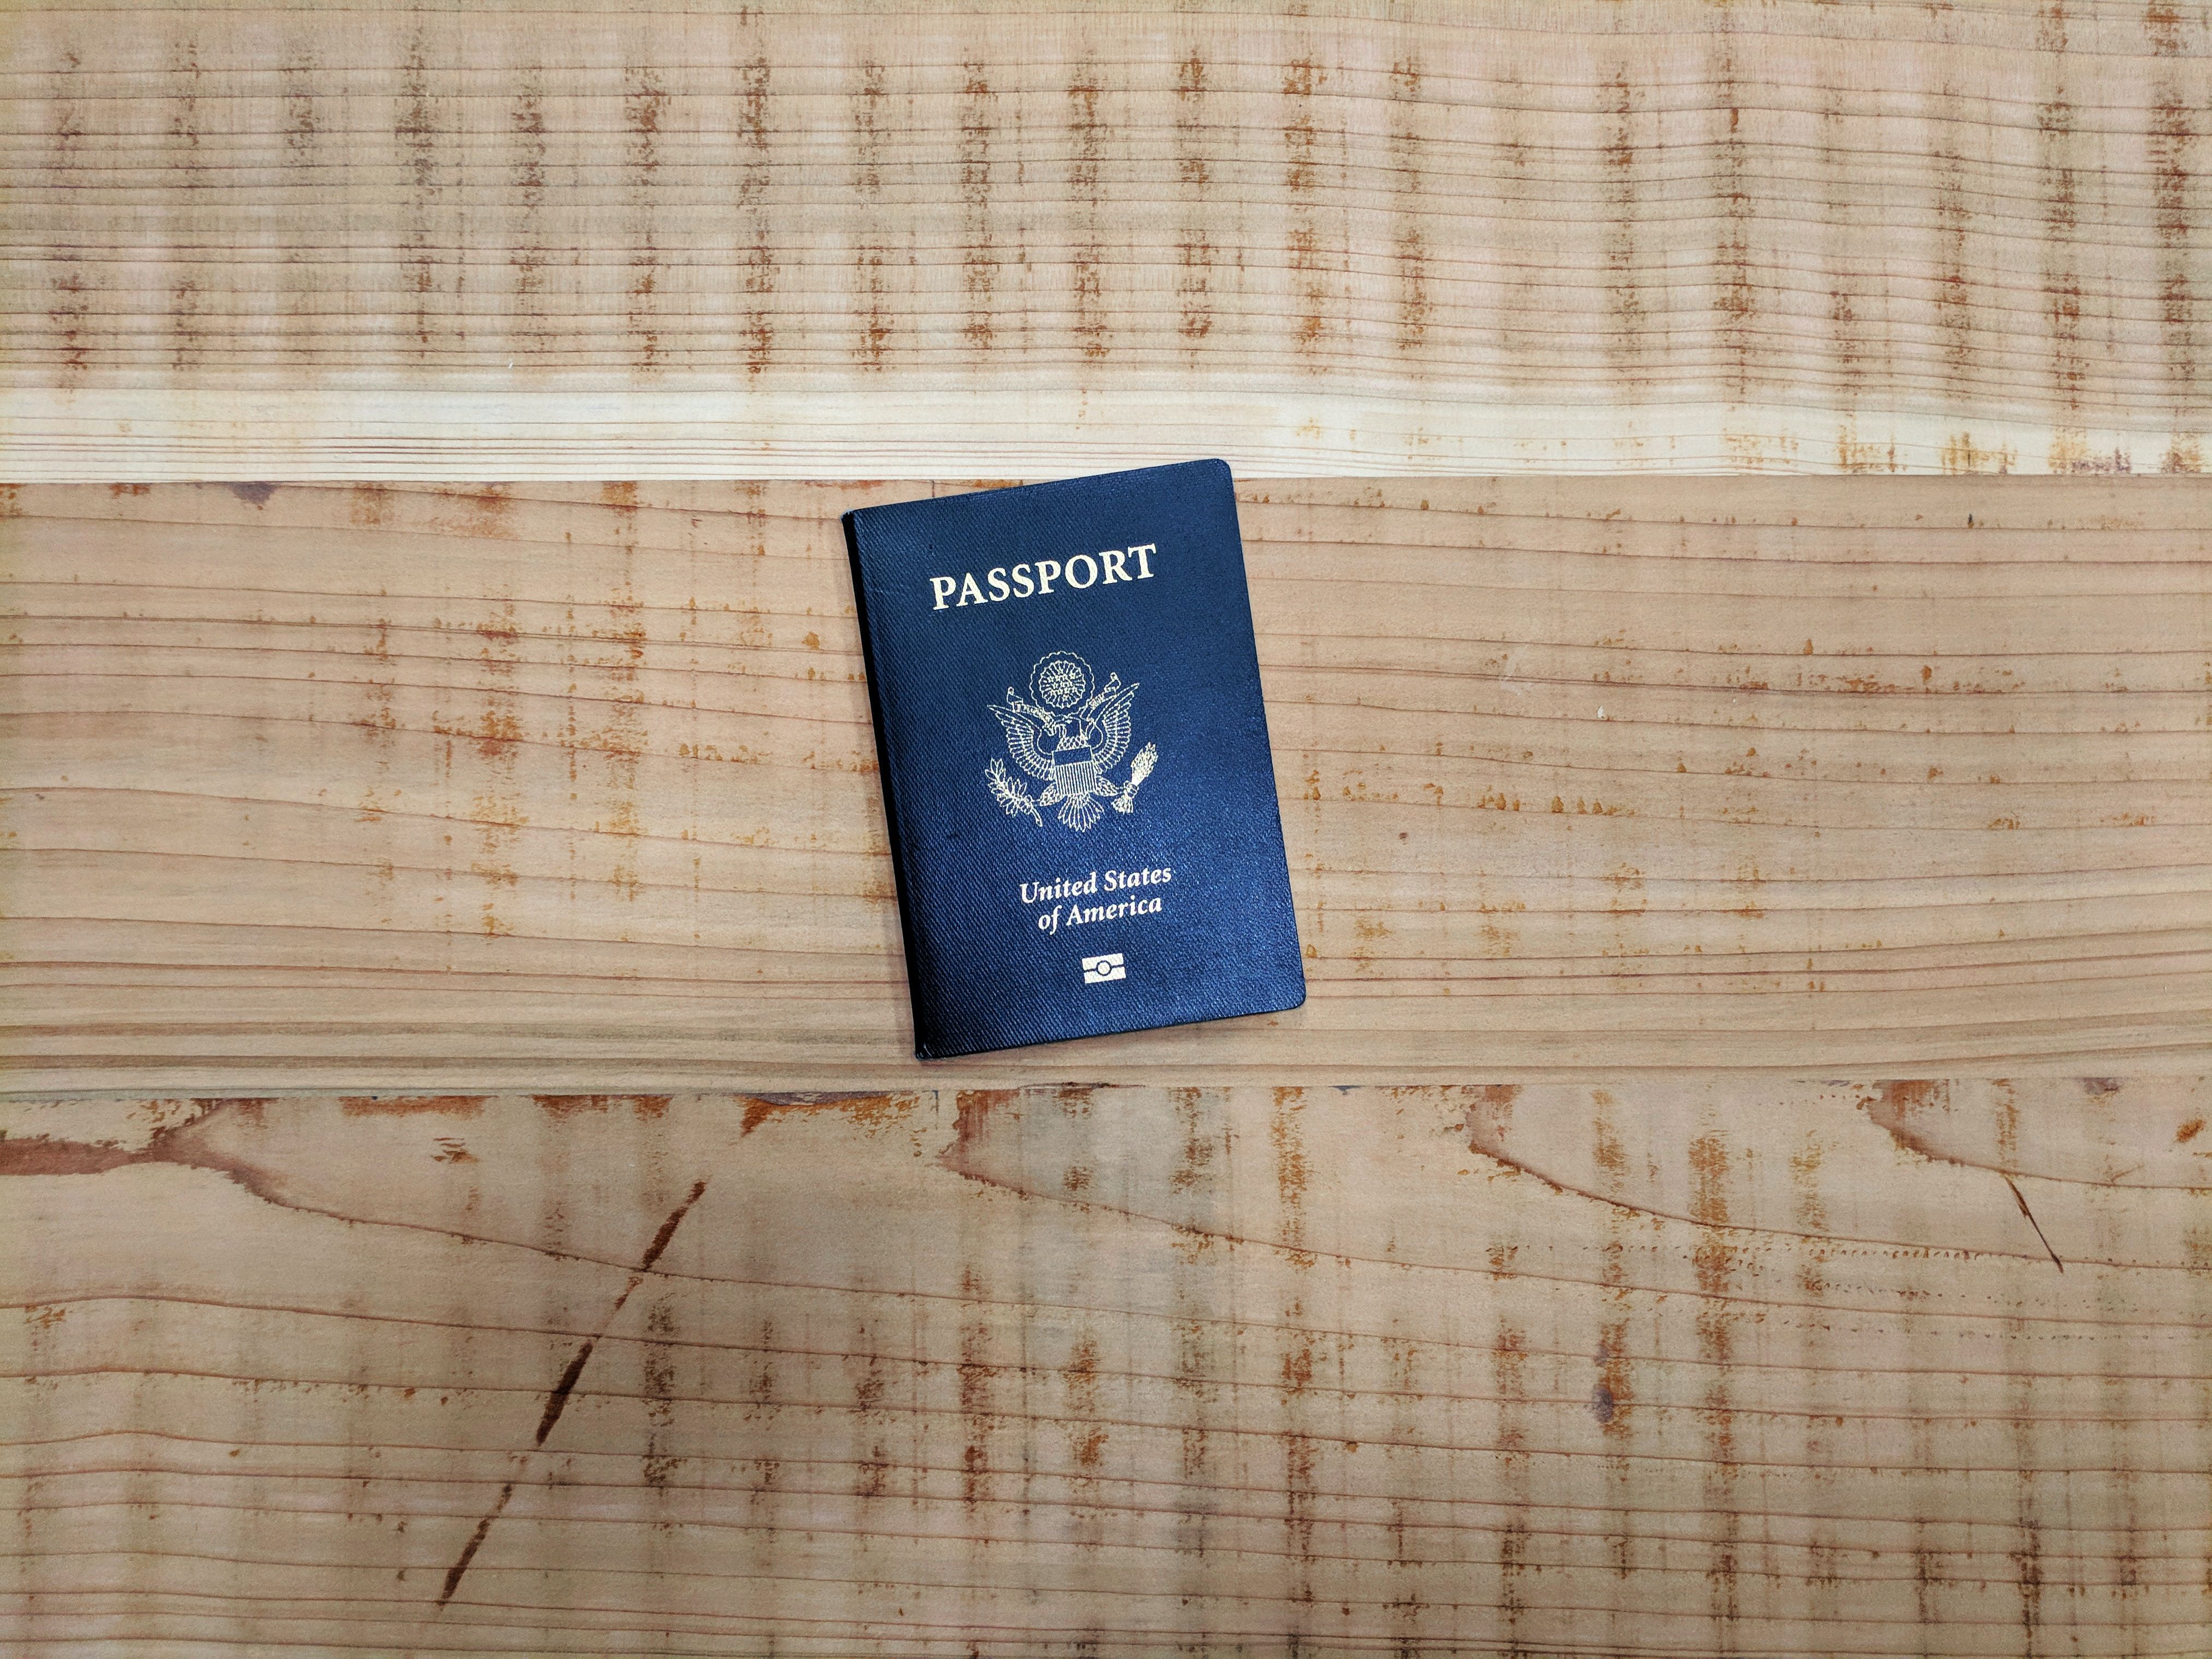 A US Passport